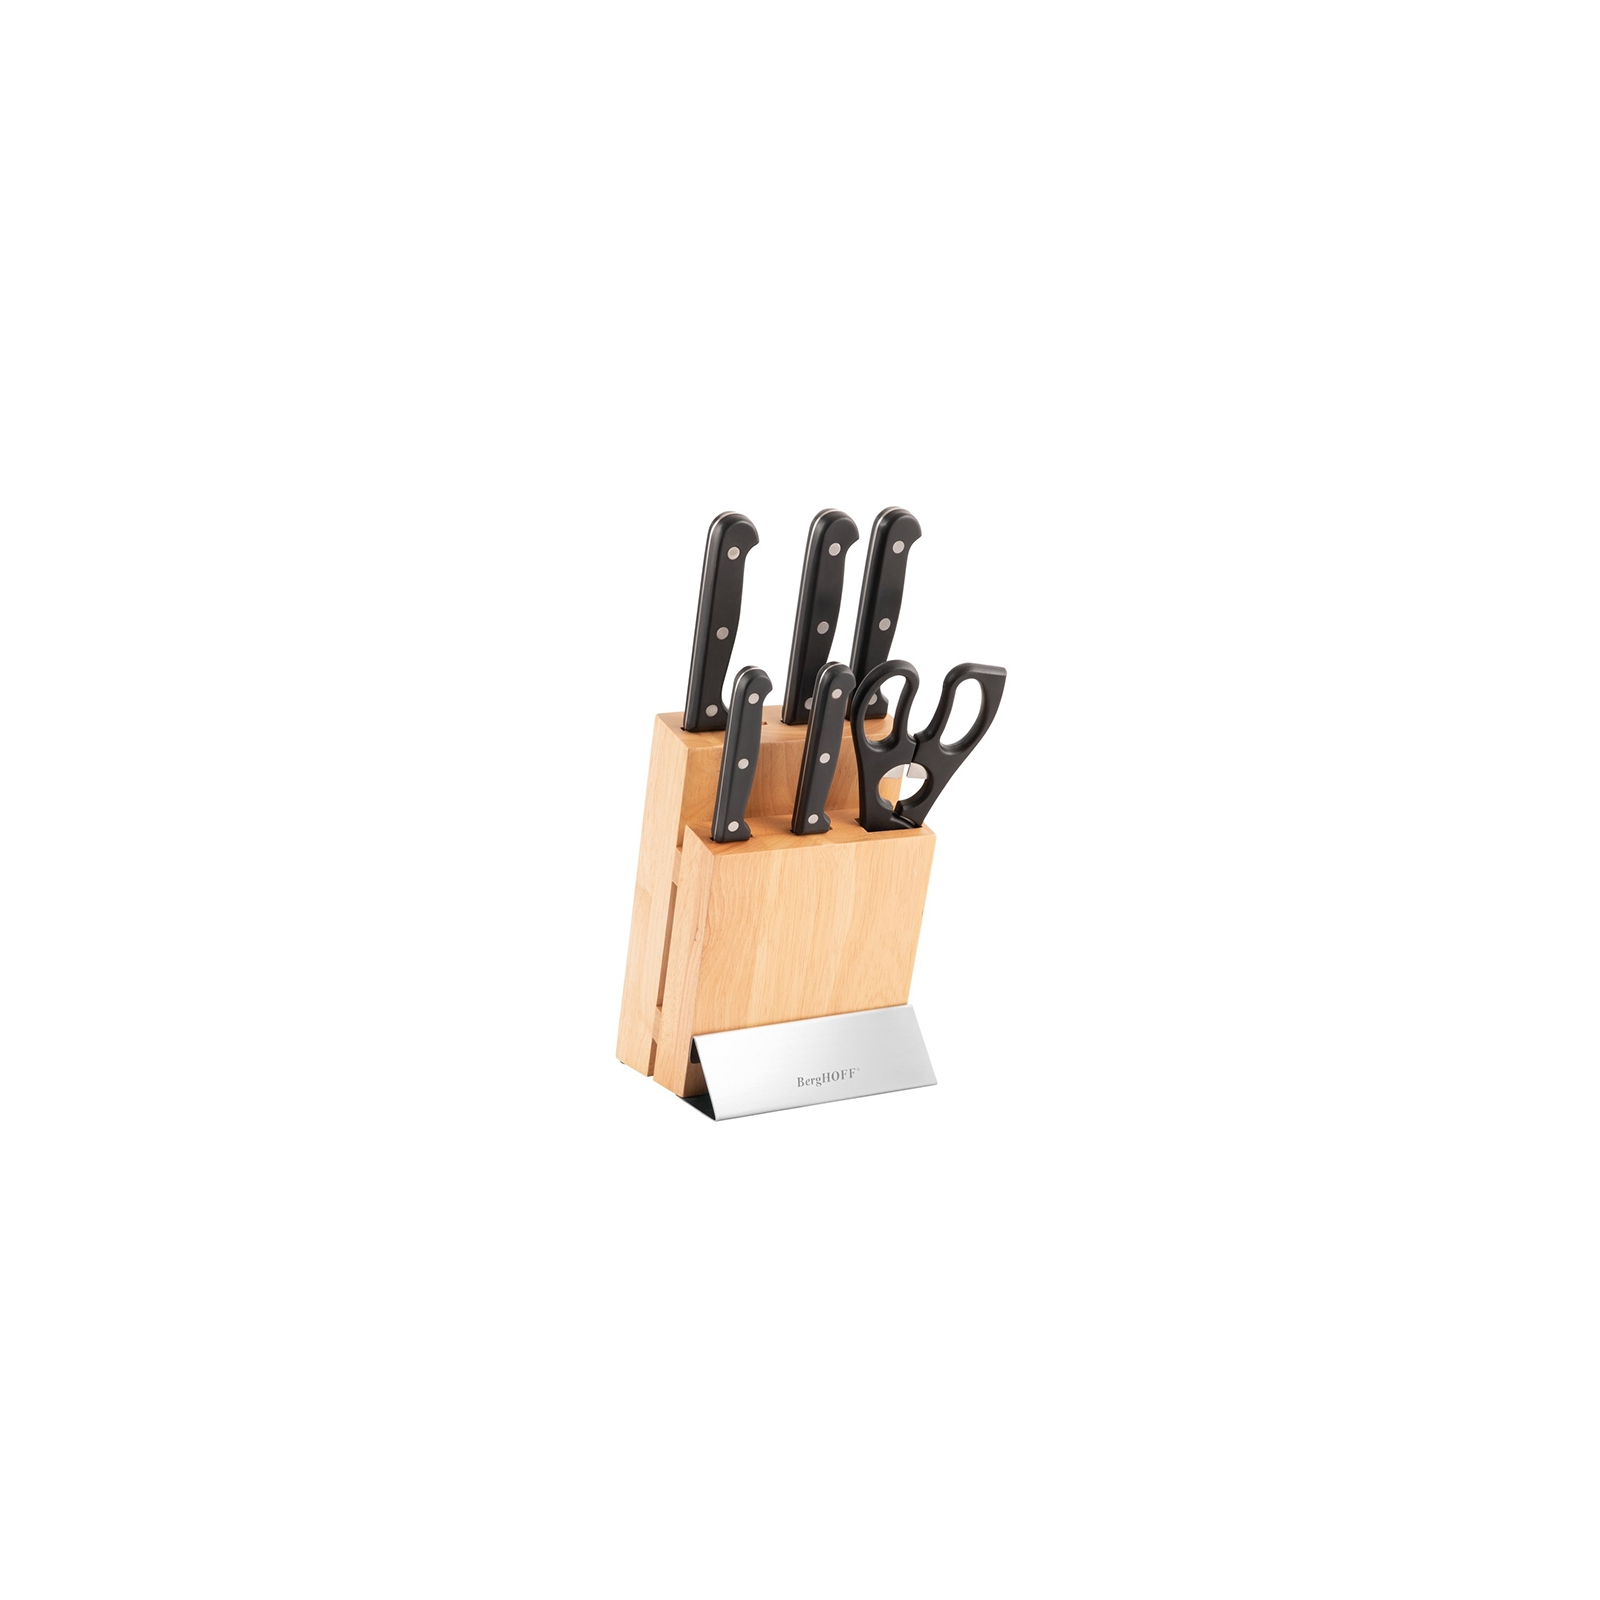 Набір ножів BergHOFF Essentials Quadra Duo с продставкой 7 предметов (1307030)